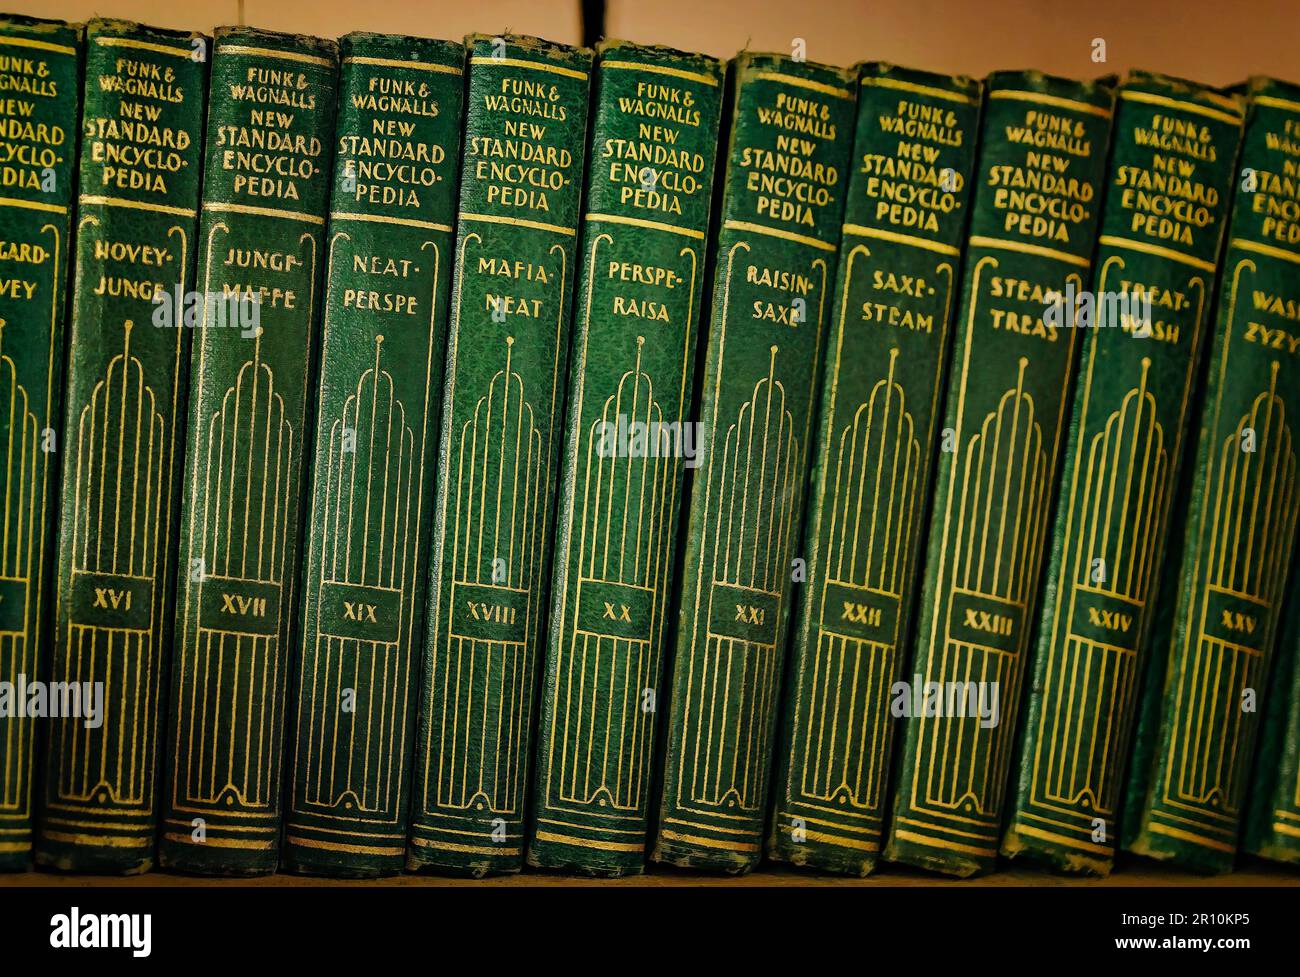 Funk & Wagnalls Neue Standard-Enzyklopädien aus dem Jahr 1931 werden in einem altmodischen Gemischtwarenladen in Stockton, Alabama, ausgestellt. Stockfoto